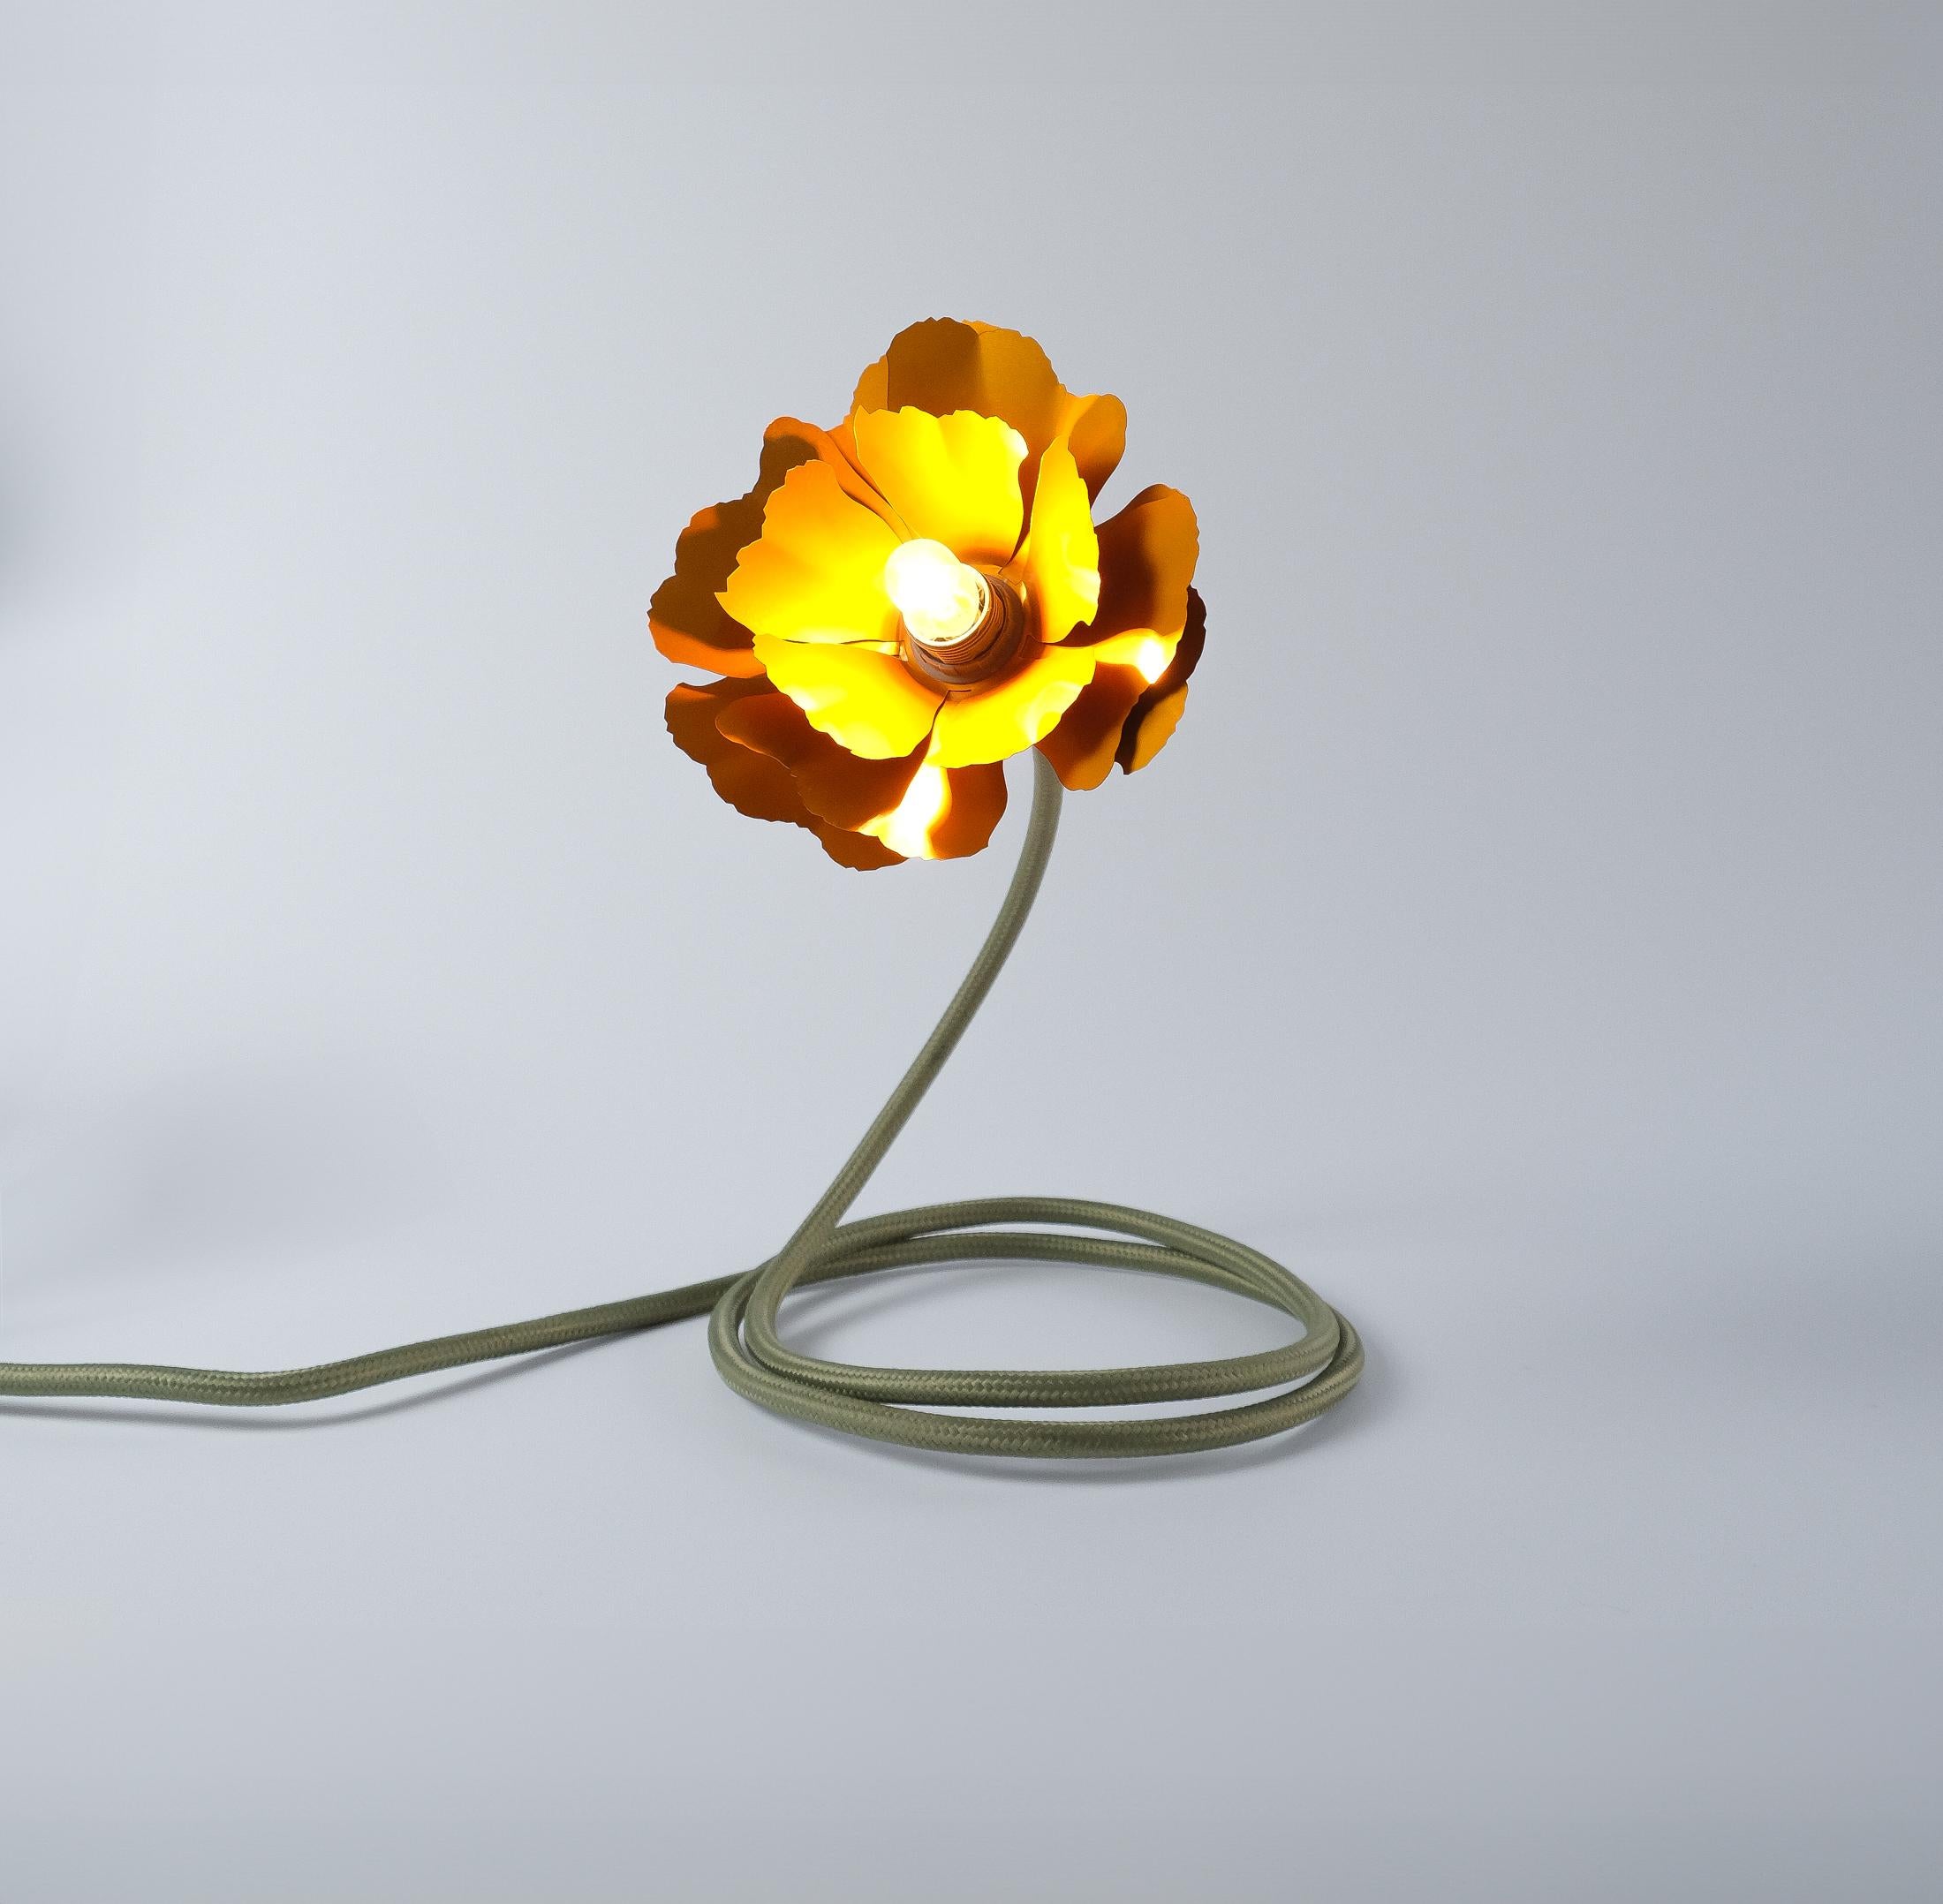 Helena Christensen's Flexible Flower Lamp for Habitat “V.I.P” Collection, 2004 For Sale 1